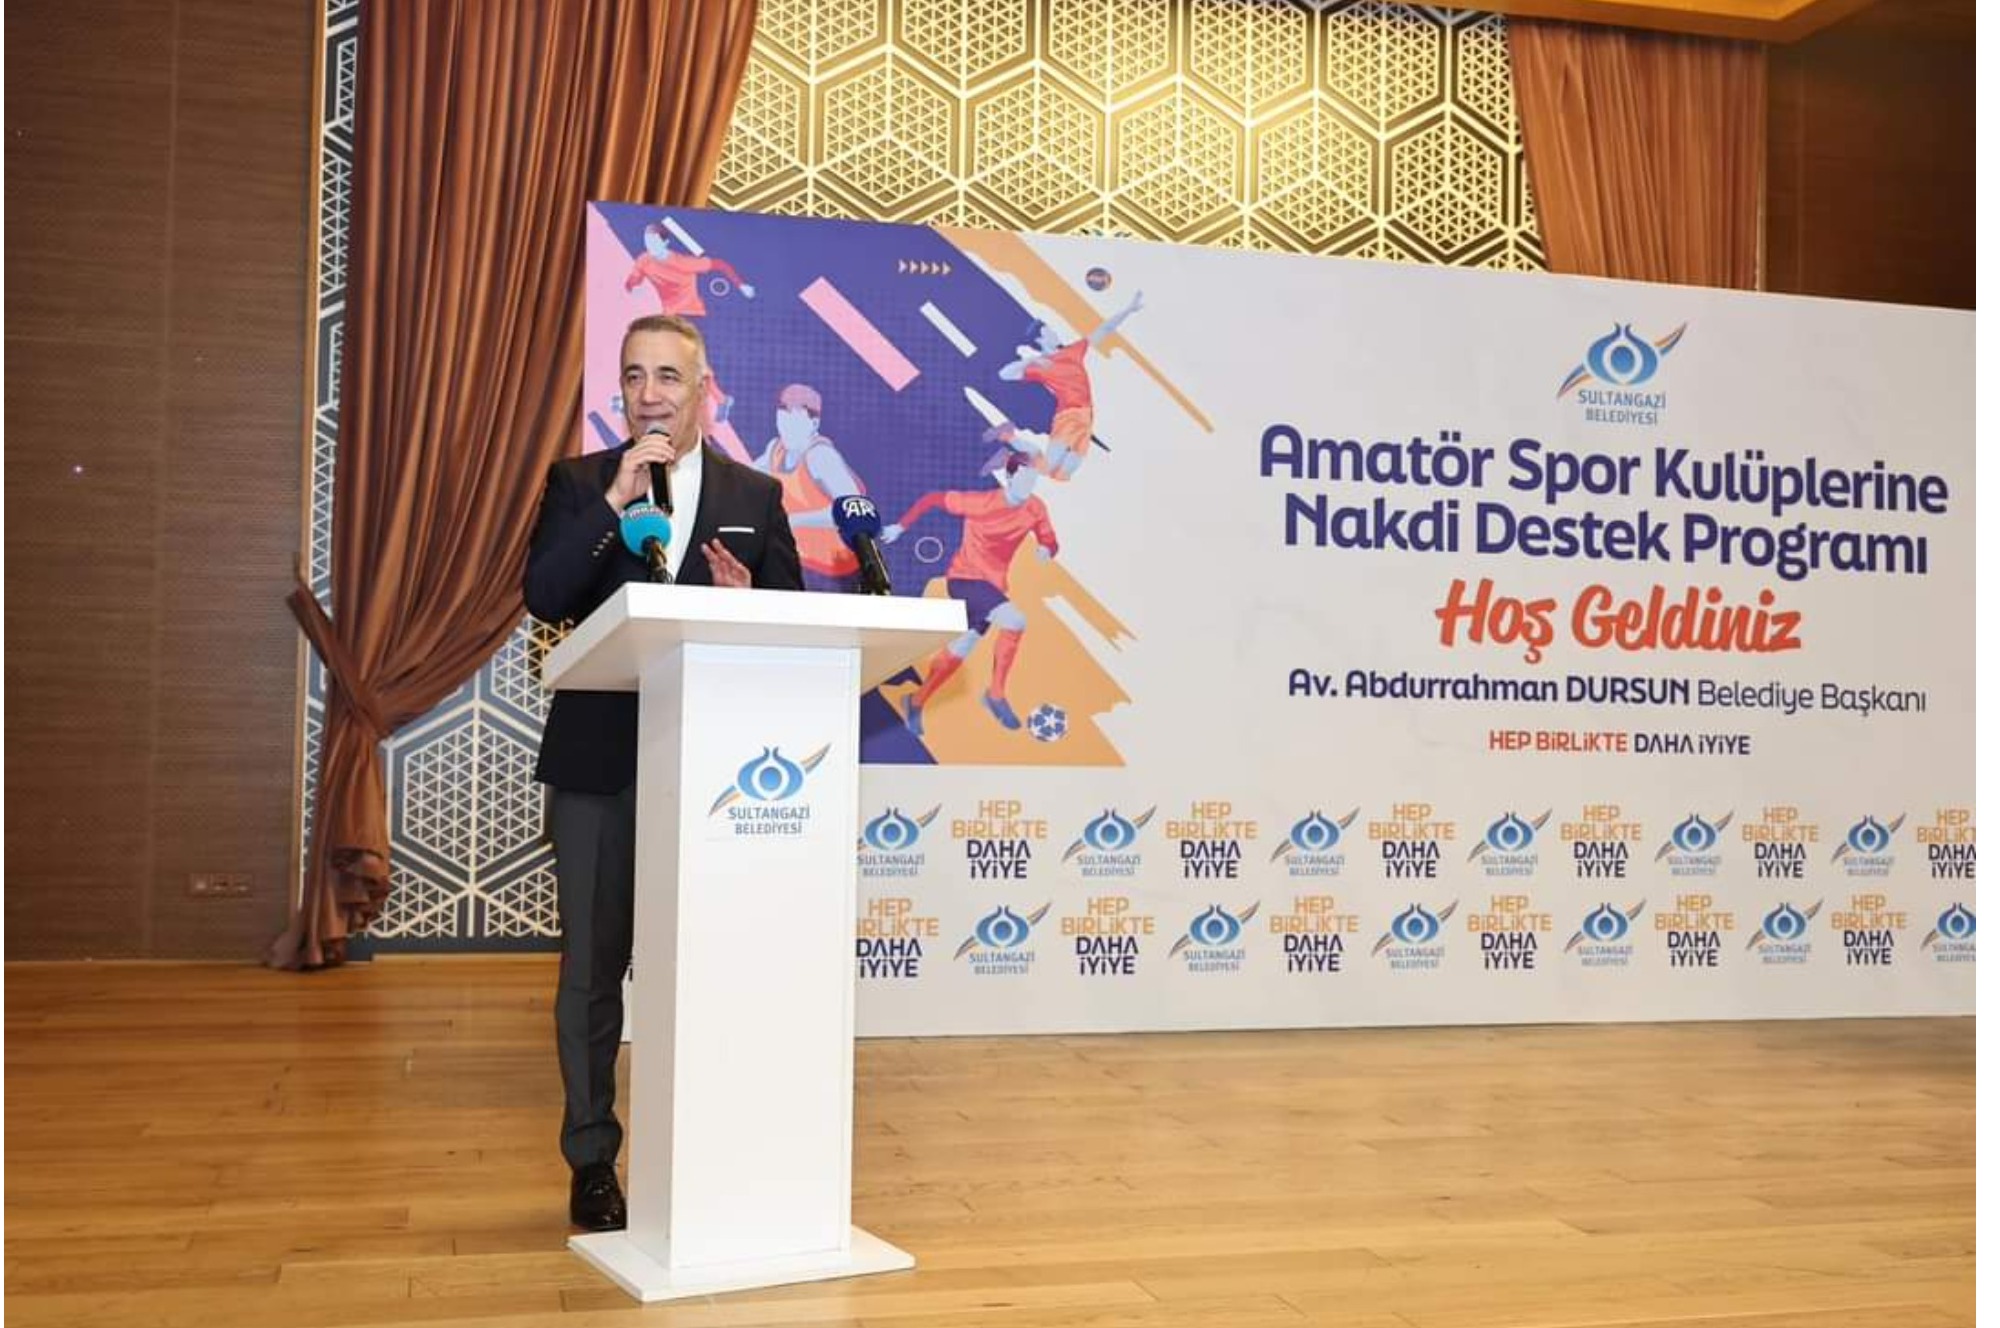 Sultangazi Belediye Başkanı Av. Abdurrahman Dursun'dan Amatör Spor Kulüplerine 2 Milyon TL Nakdi Destek